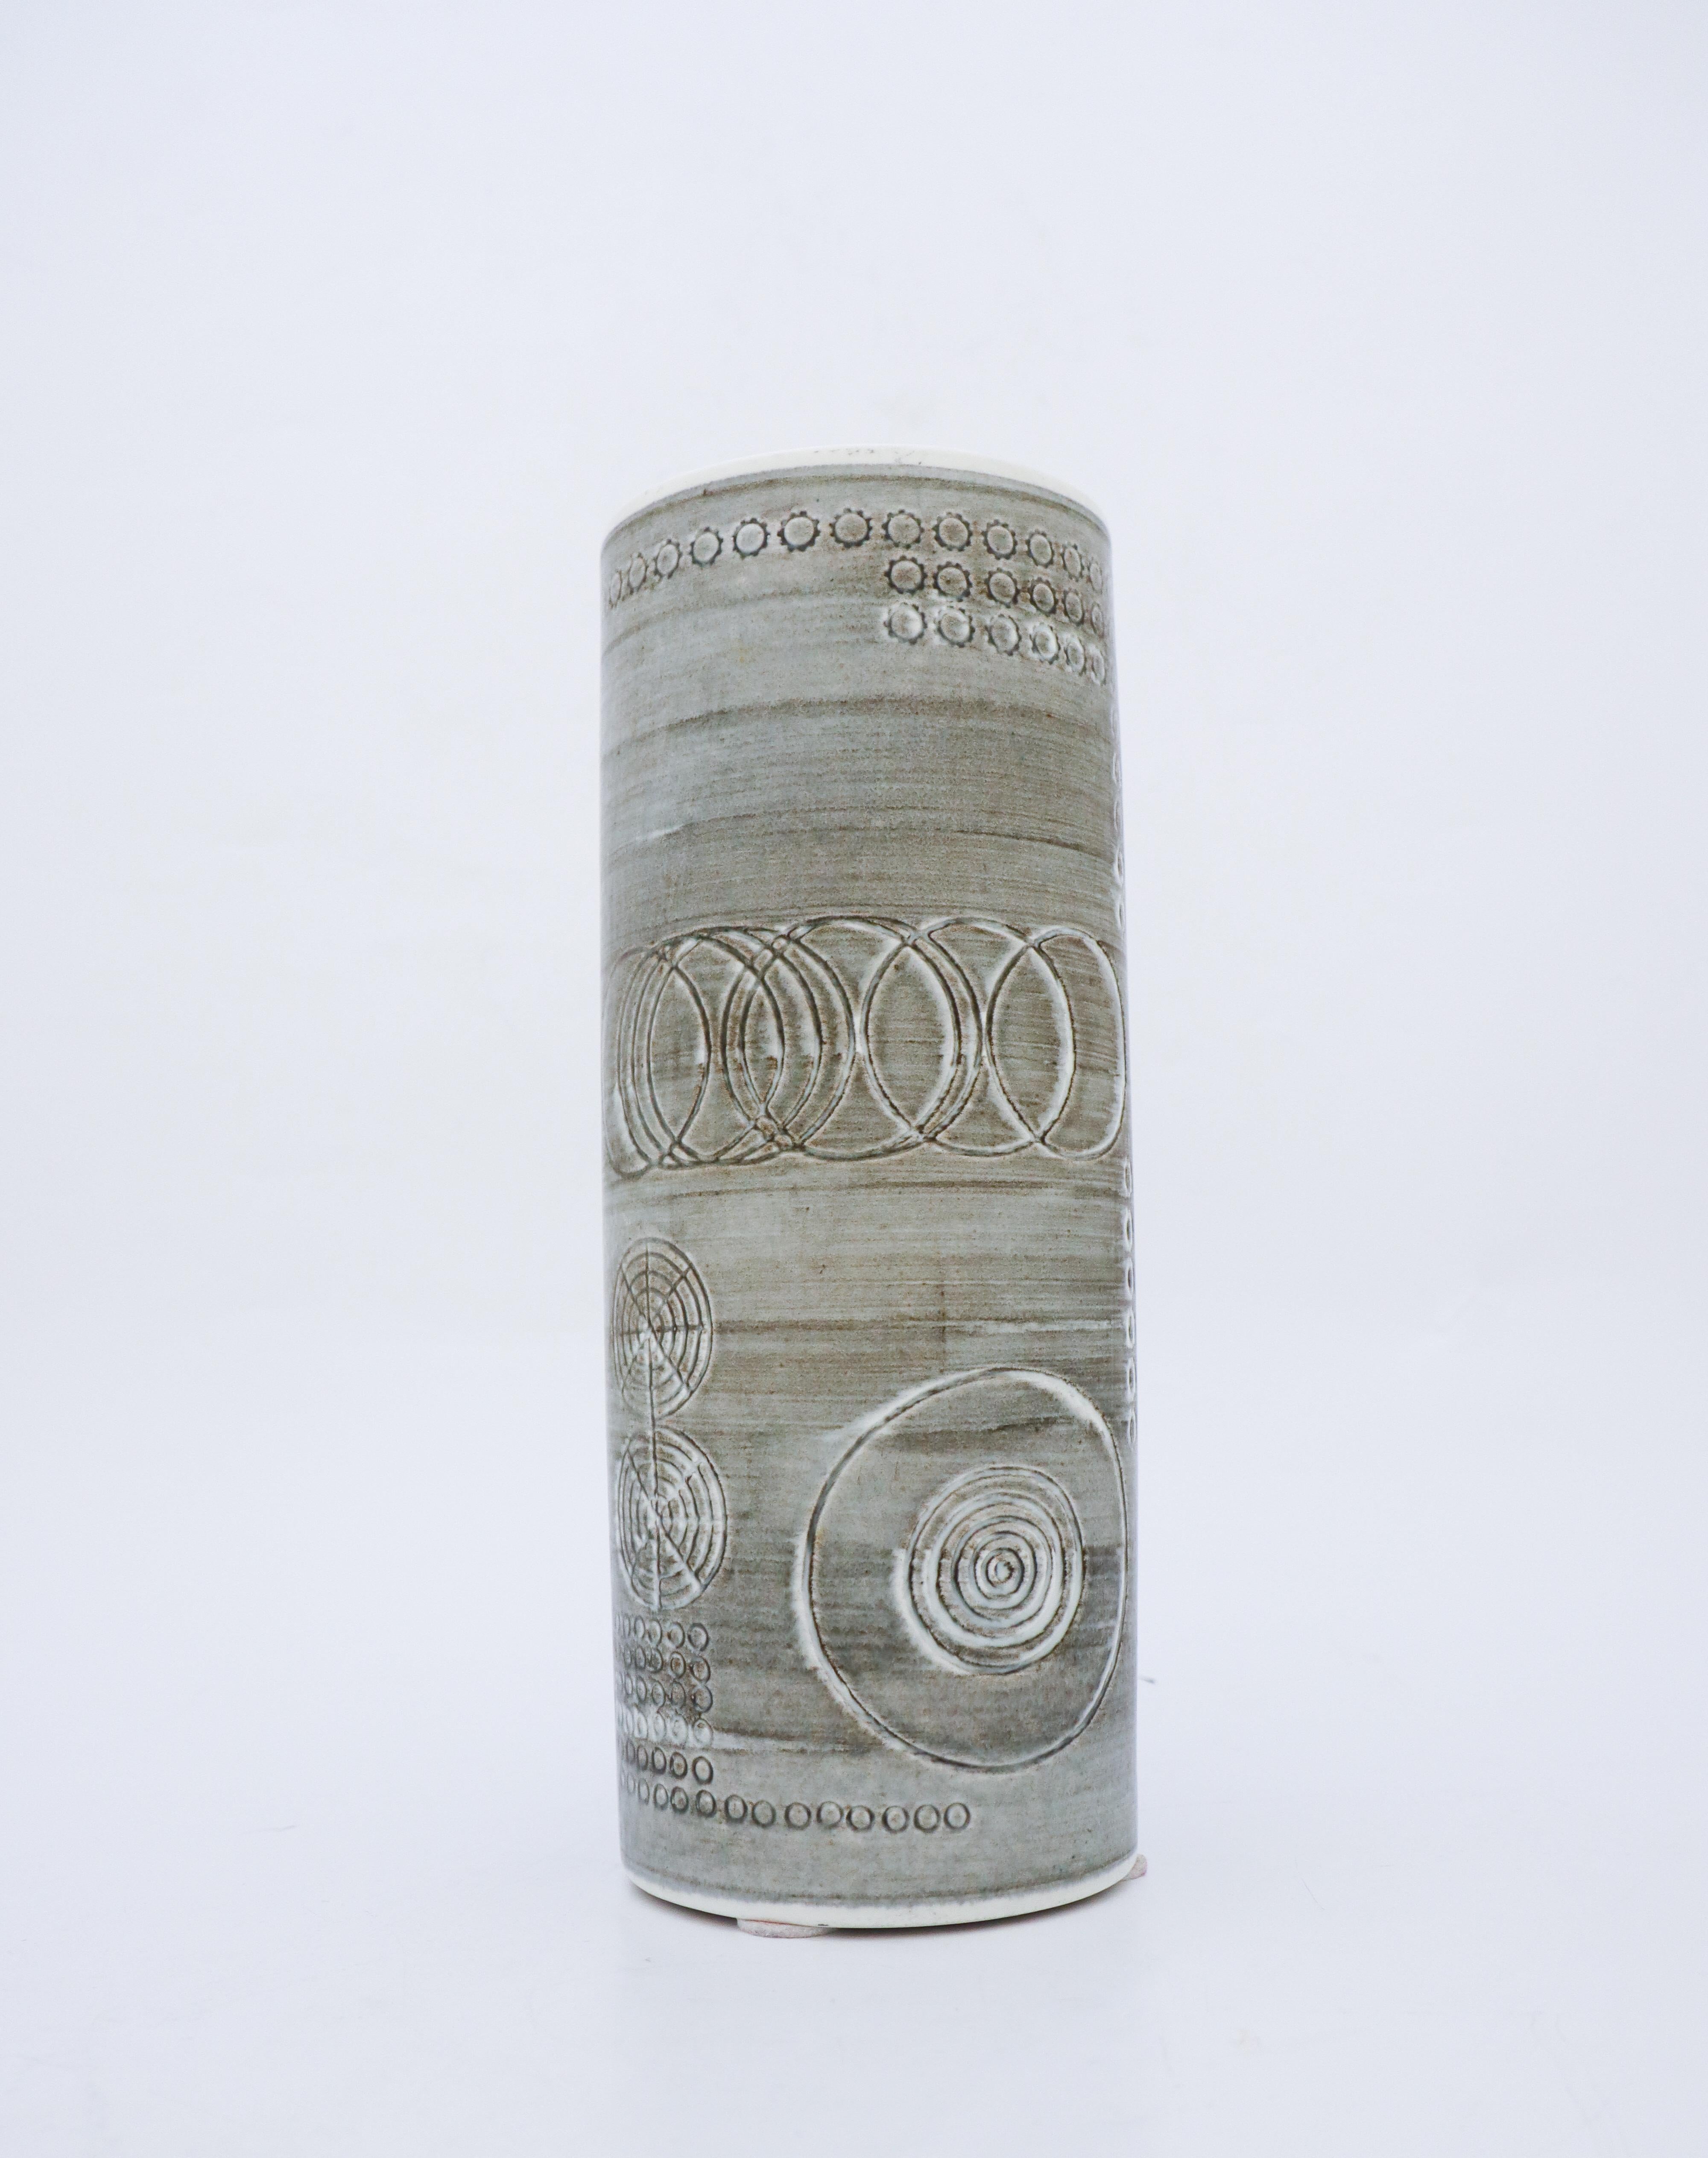 Un grand vase gris du modèle Sarek conçu par Olle Alberius chez Rörstrand. Le vase a un diamètre de 12 cm (4,8